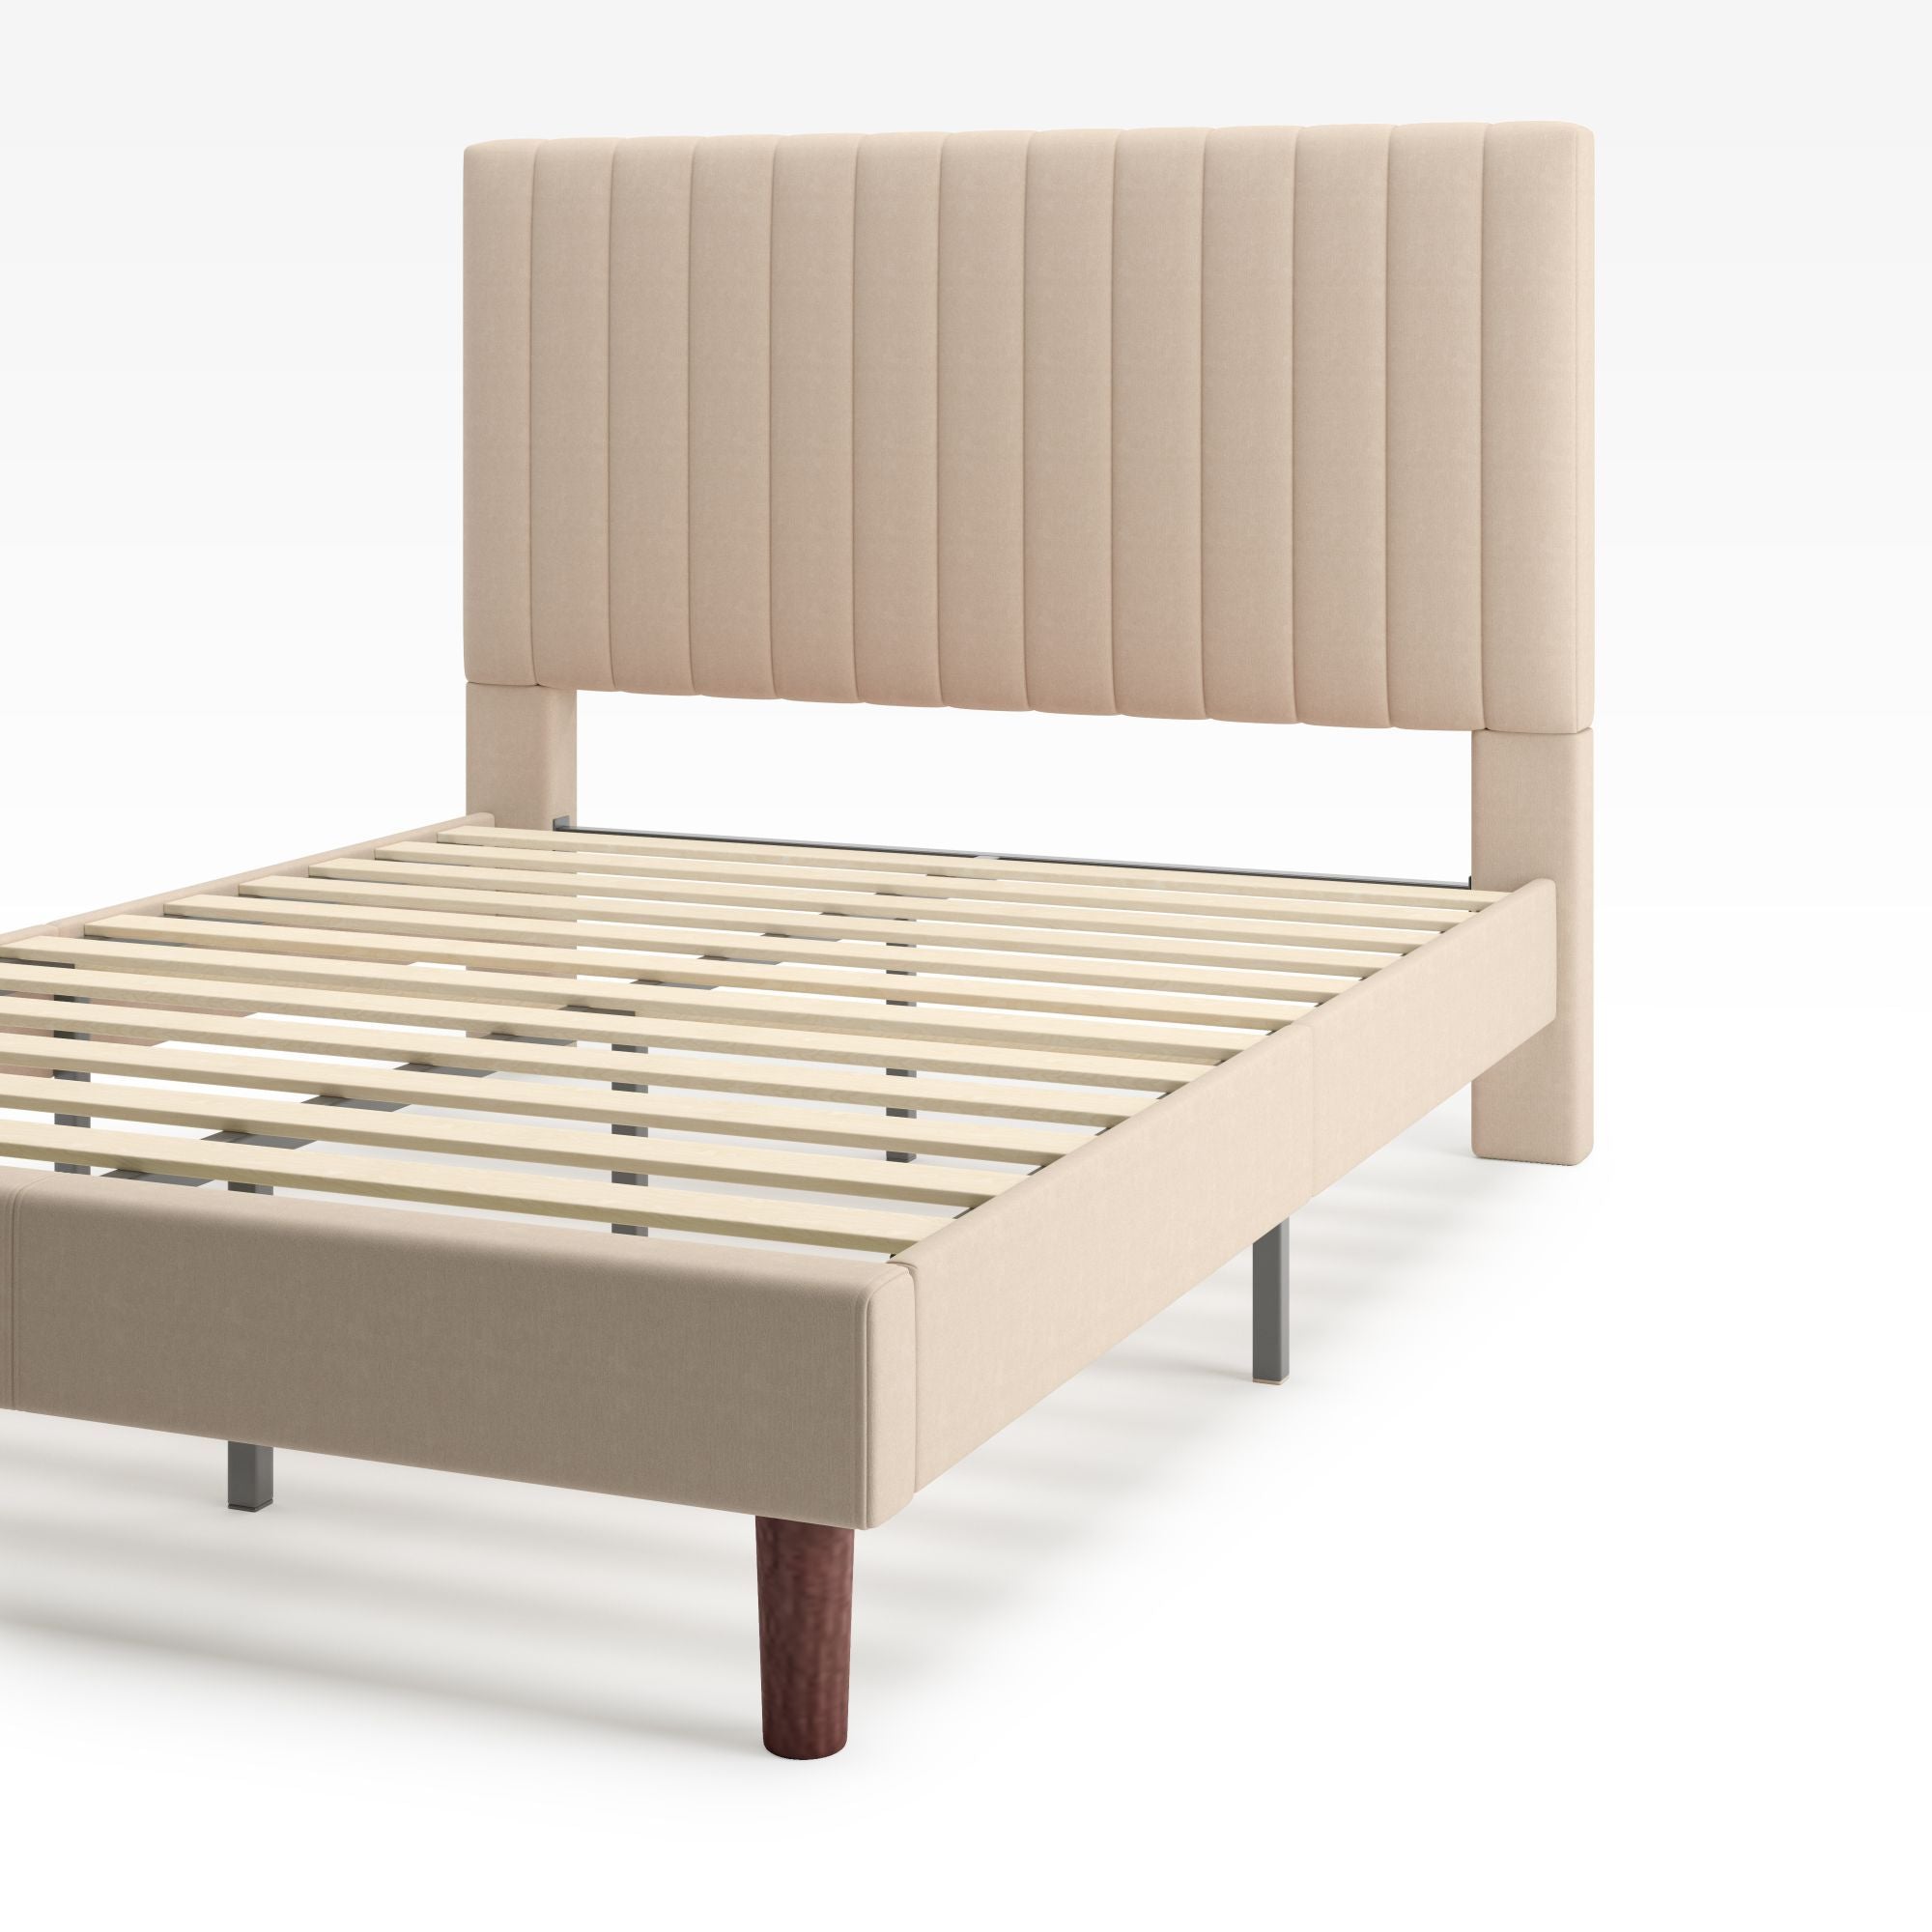 Debi Upholstered Platform Bed frame